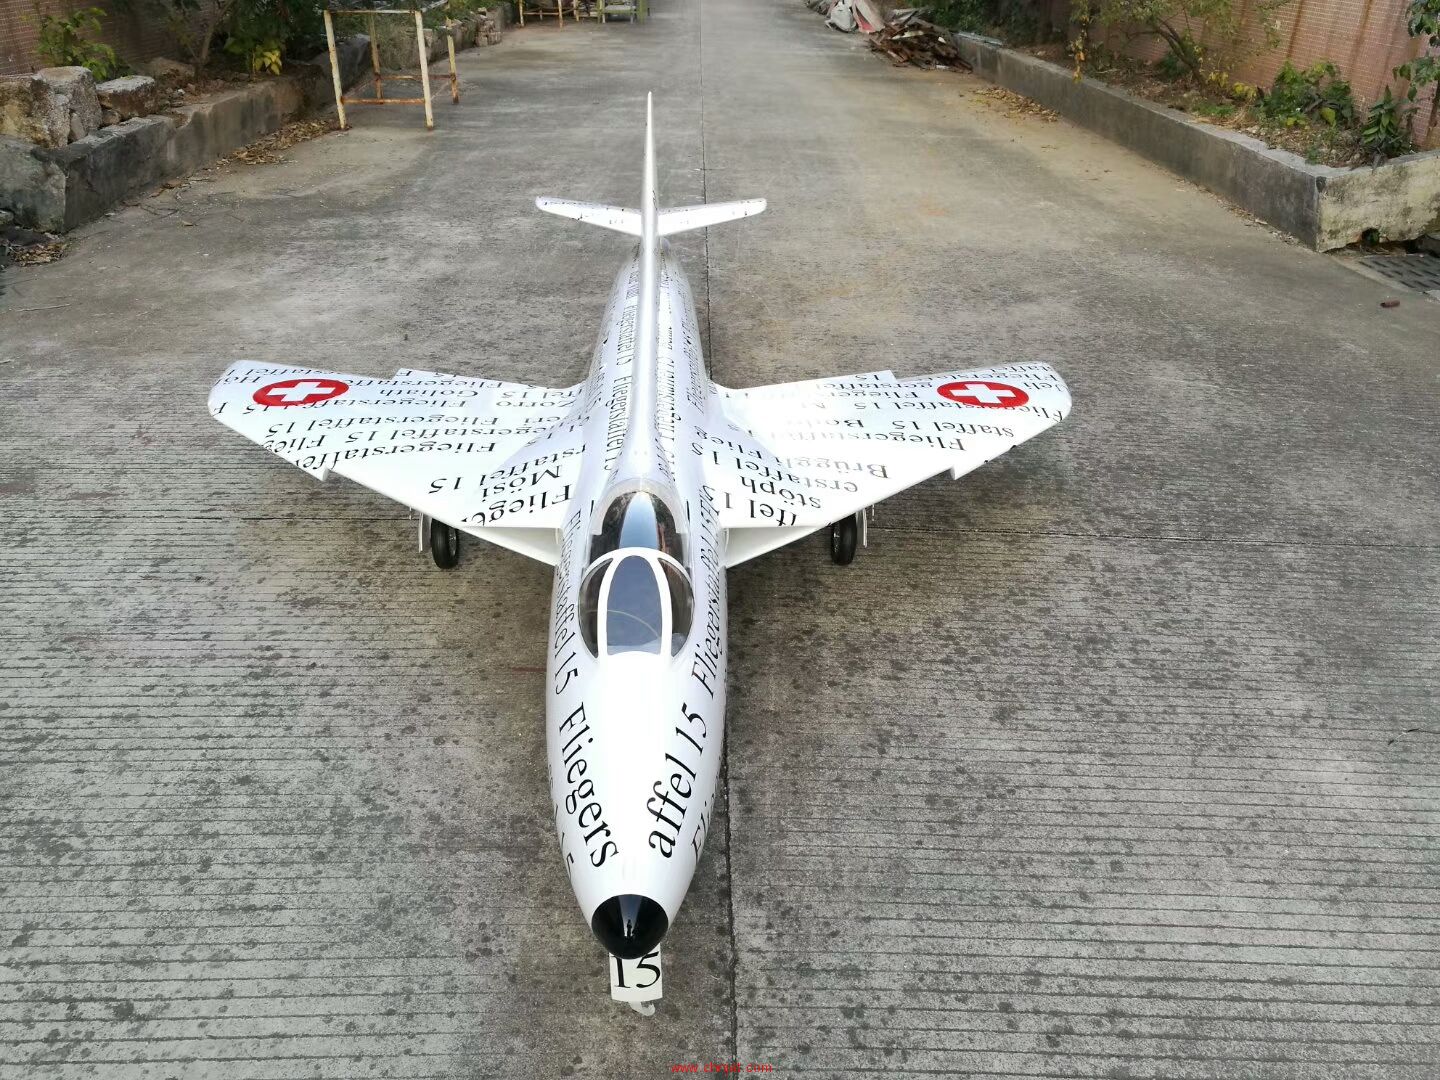 3.1米的Hawker Hunter